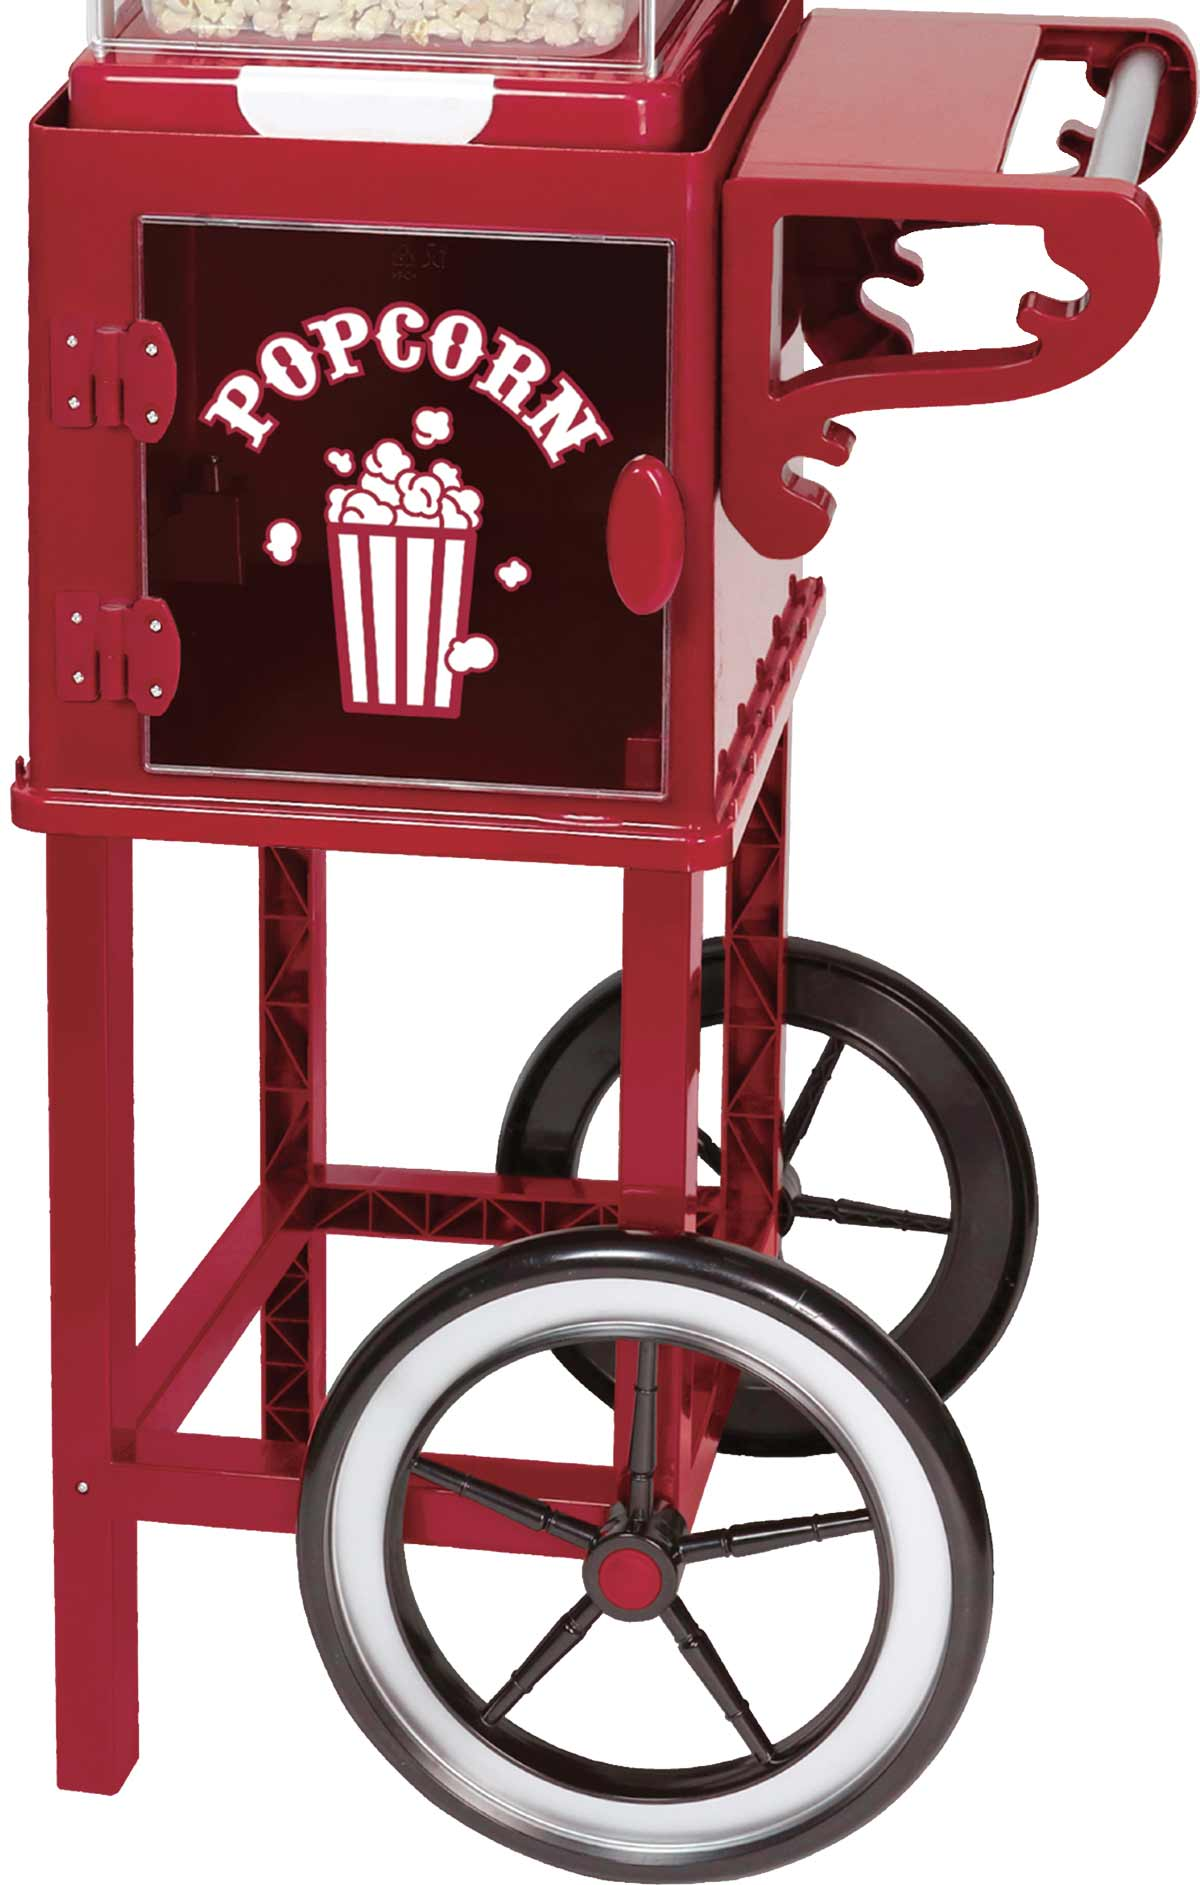 EPIQ 80001270 Popcorn-Maker Popcornmaschine Meter hoch Popcorn-Wagen XXL 1,15